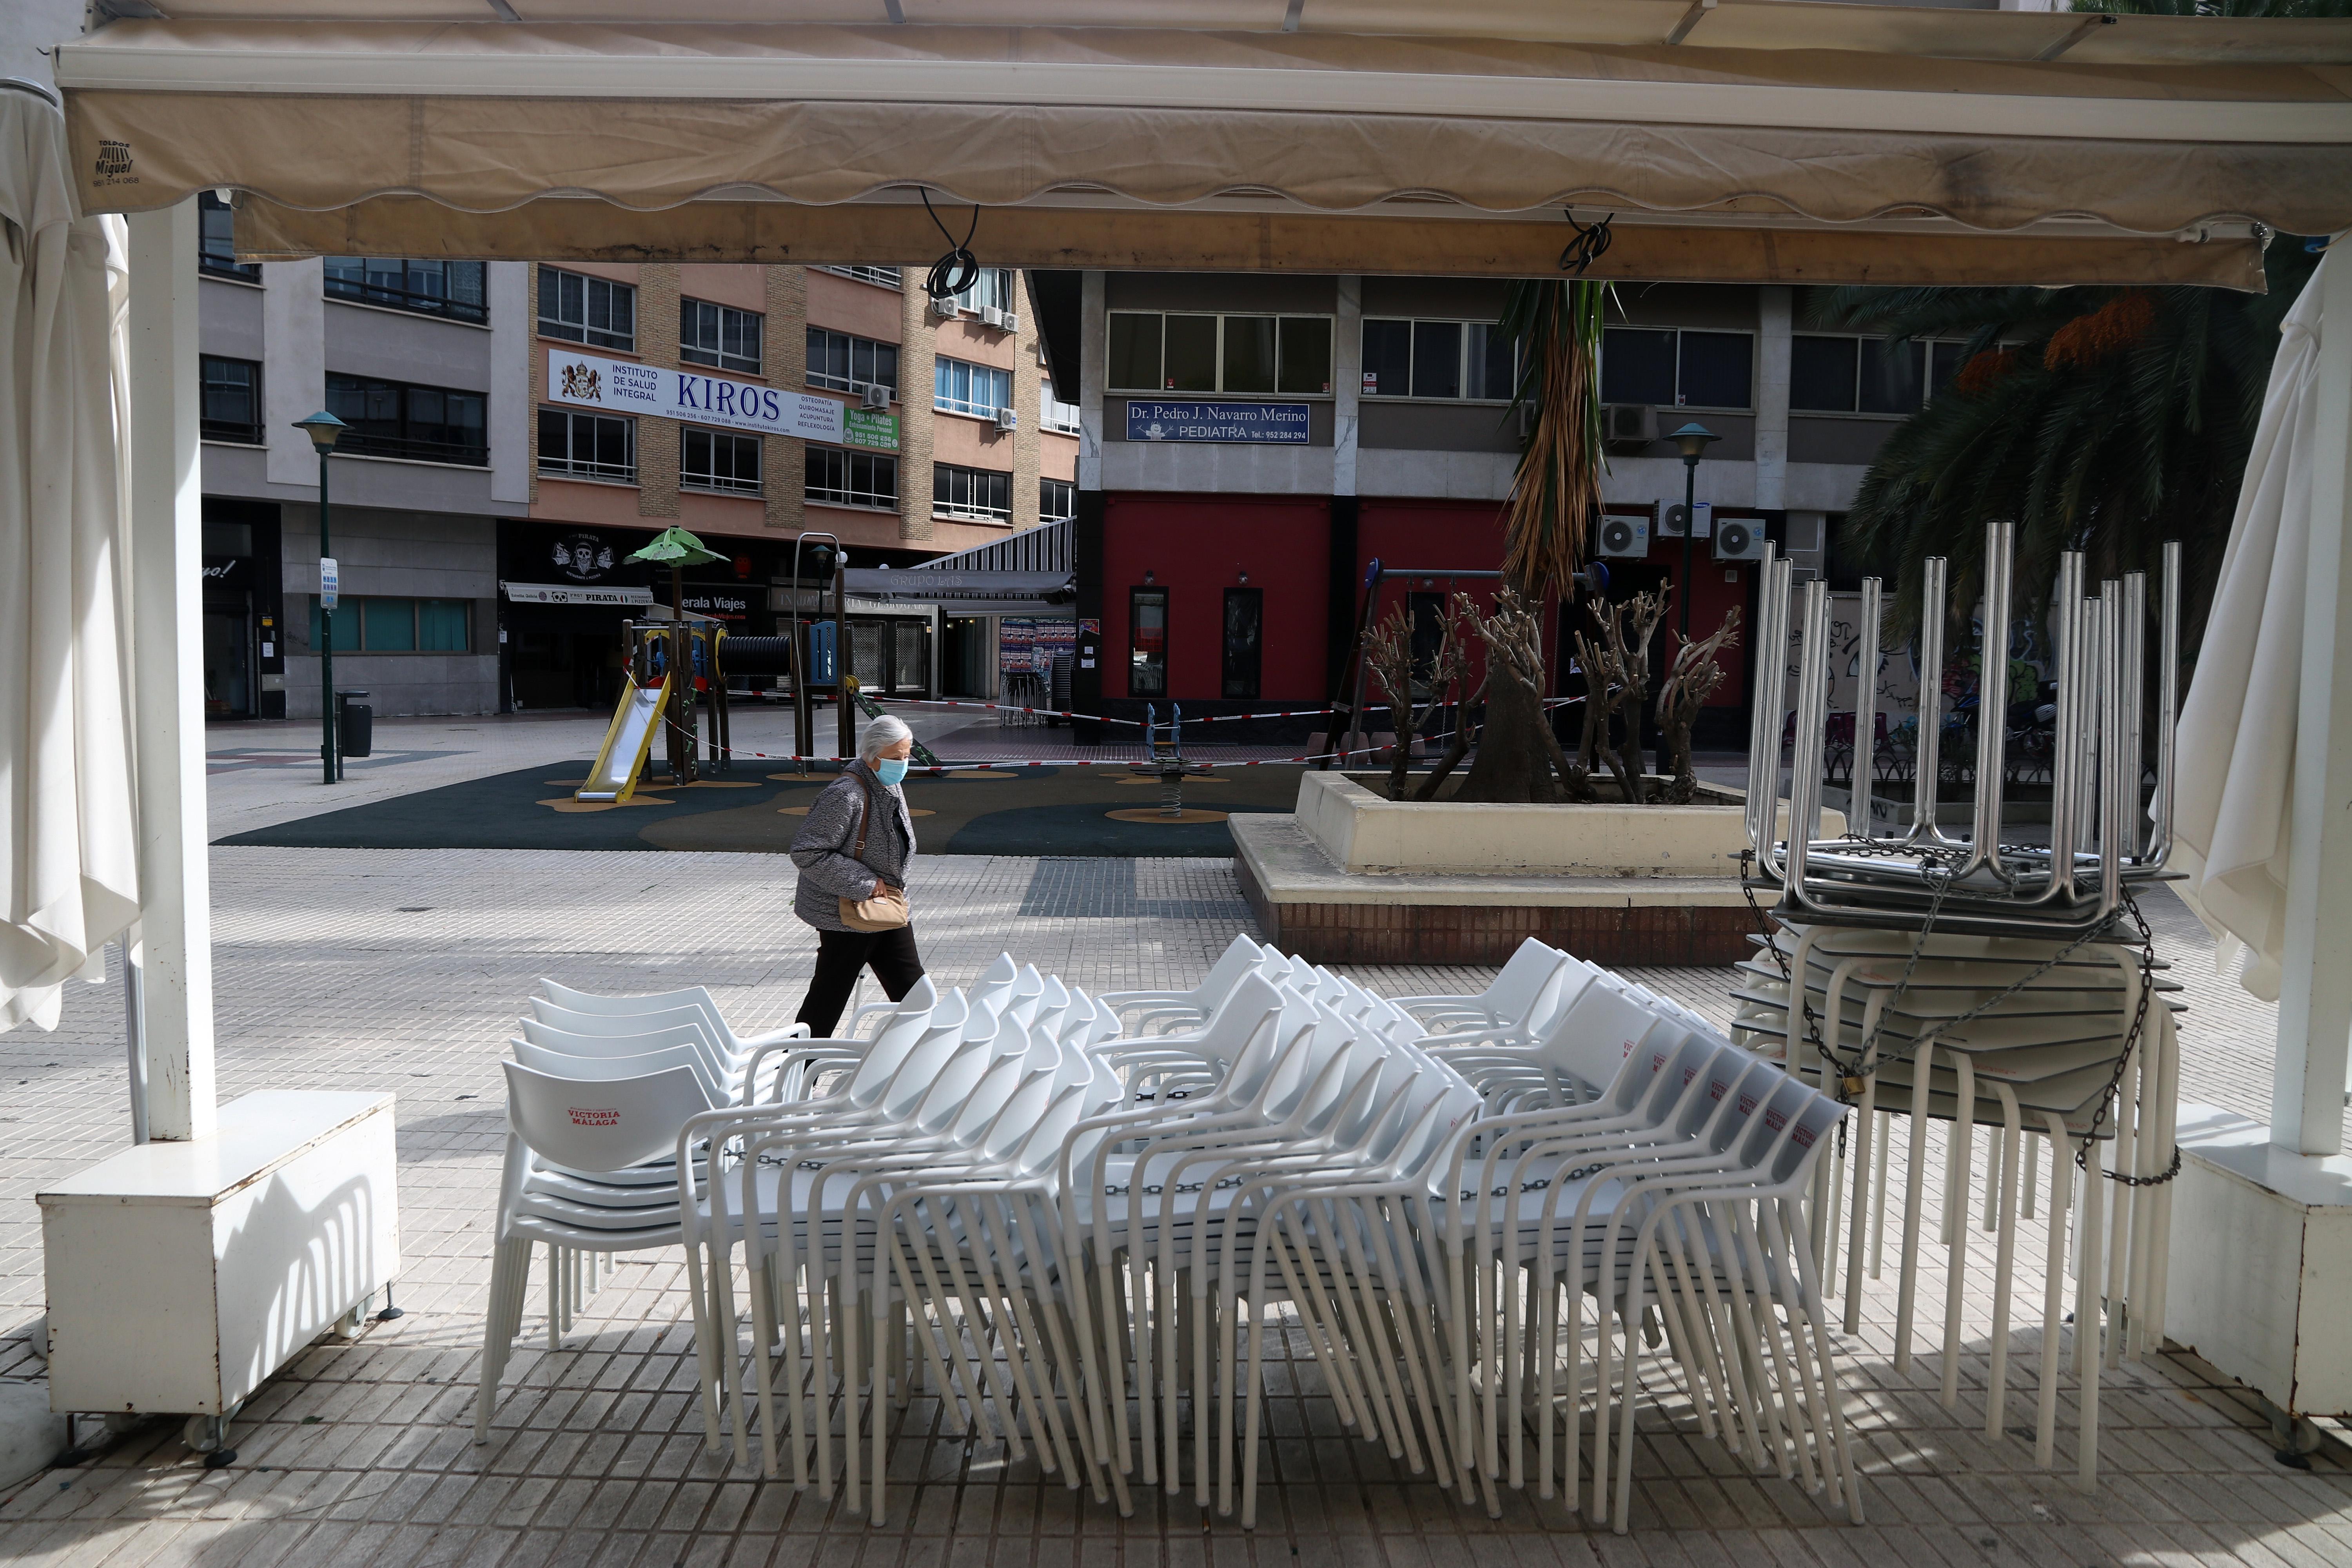 Una terraza cerrada en Málaga. Europa Press